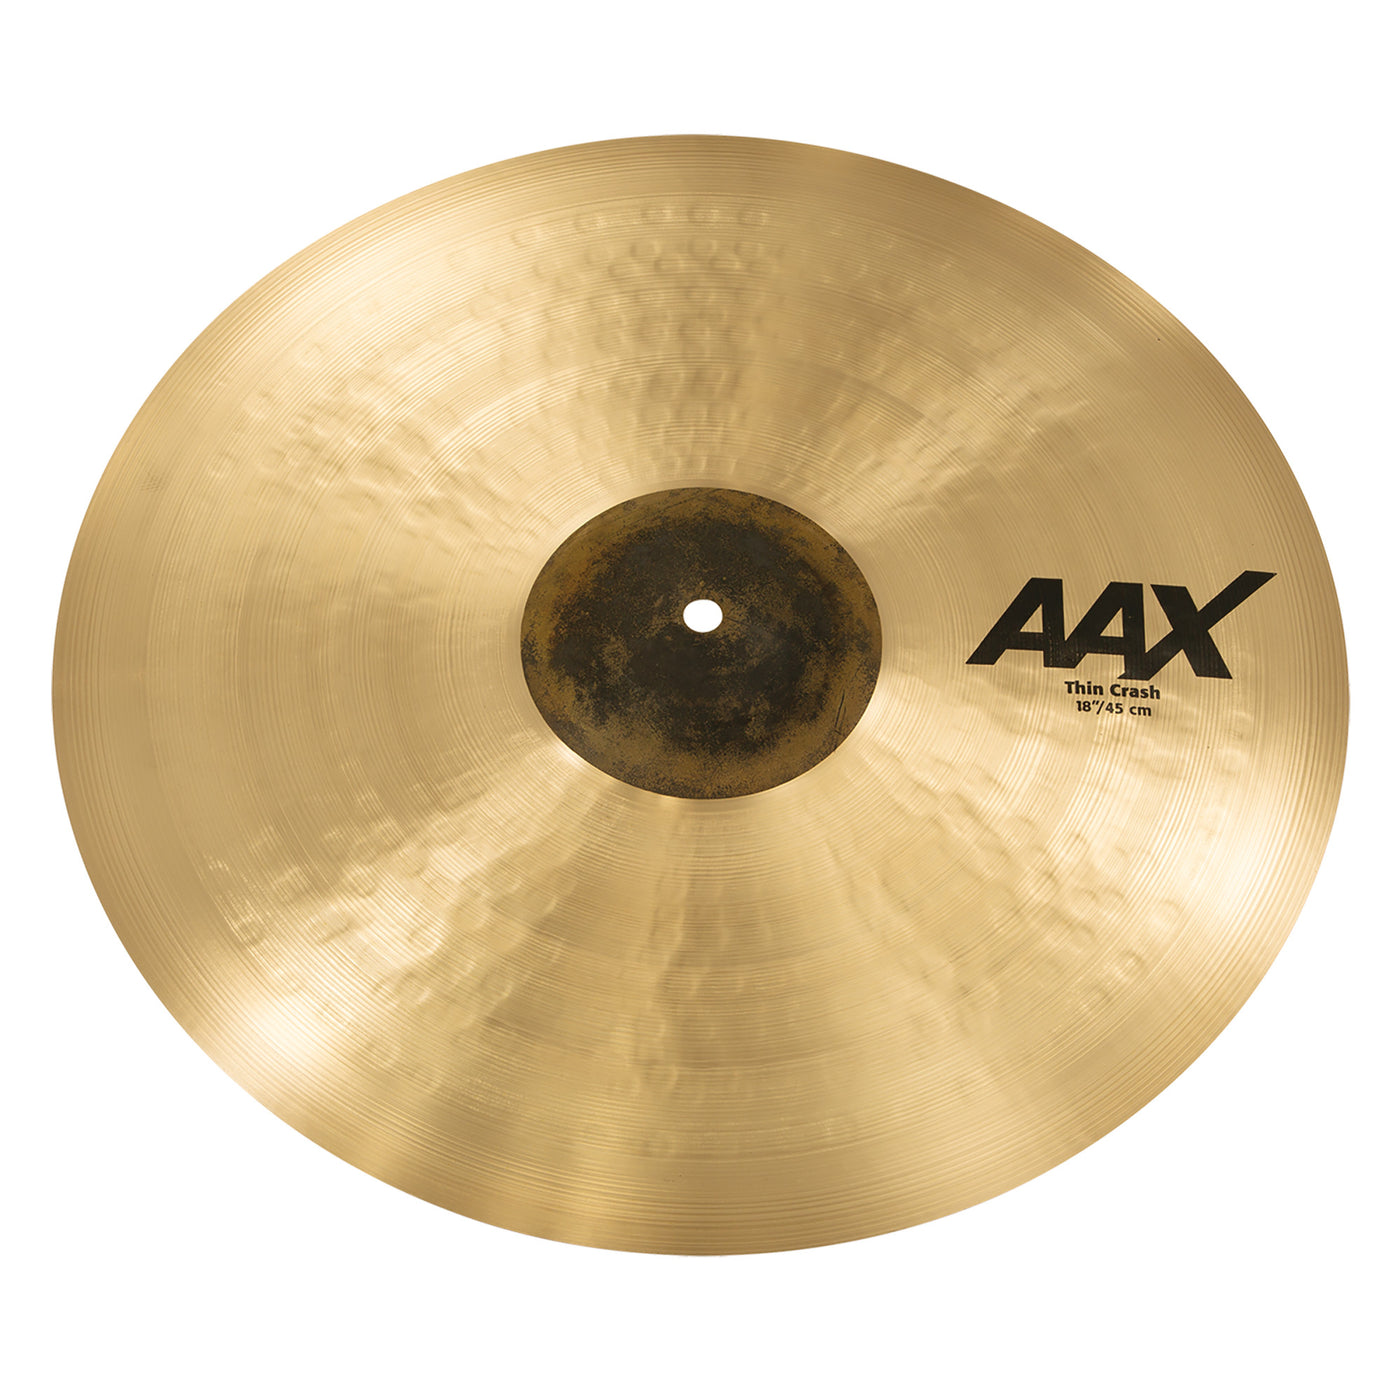 Sabian 18" AAX Thin Crash Cymbal